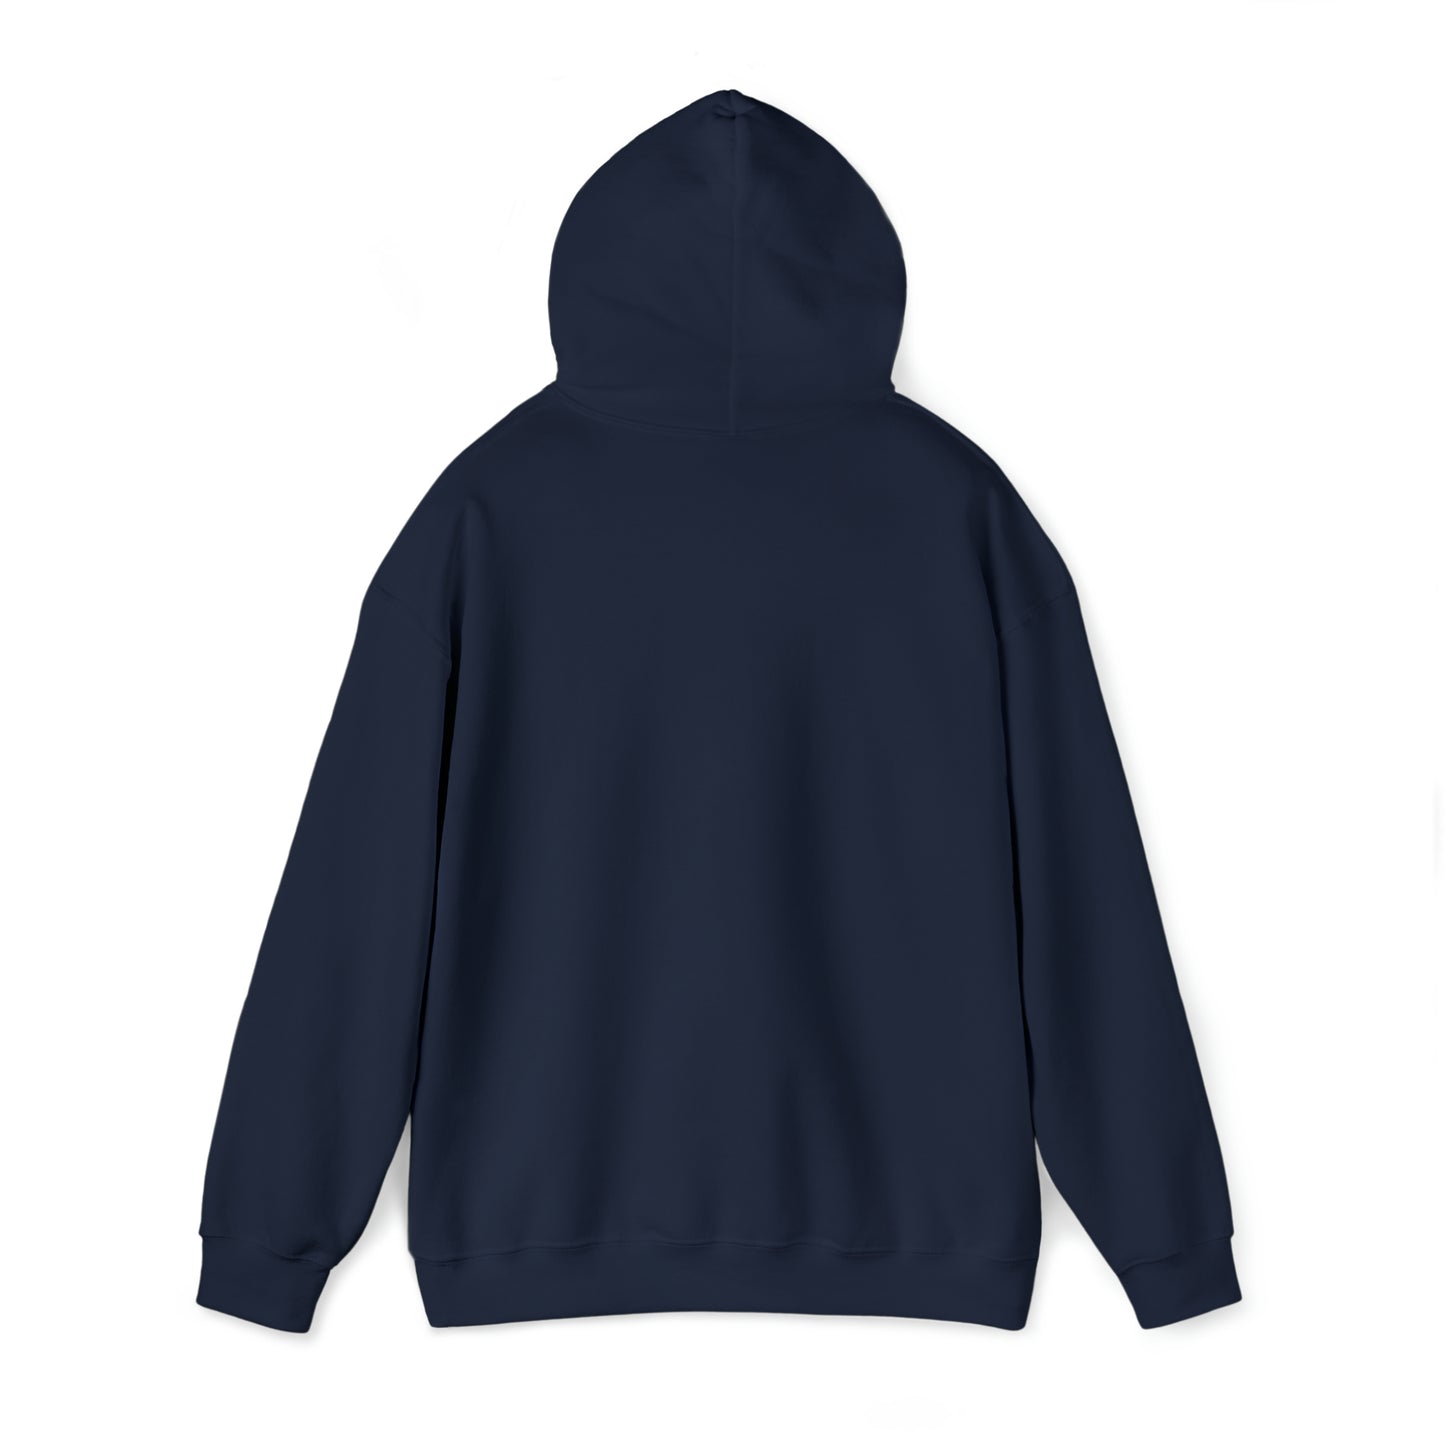 seek adventure Unisex Heavy Blend™ Hooded Sweatshirt